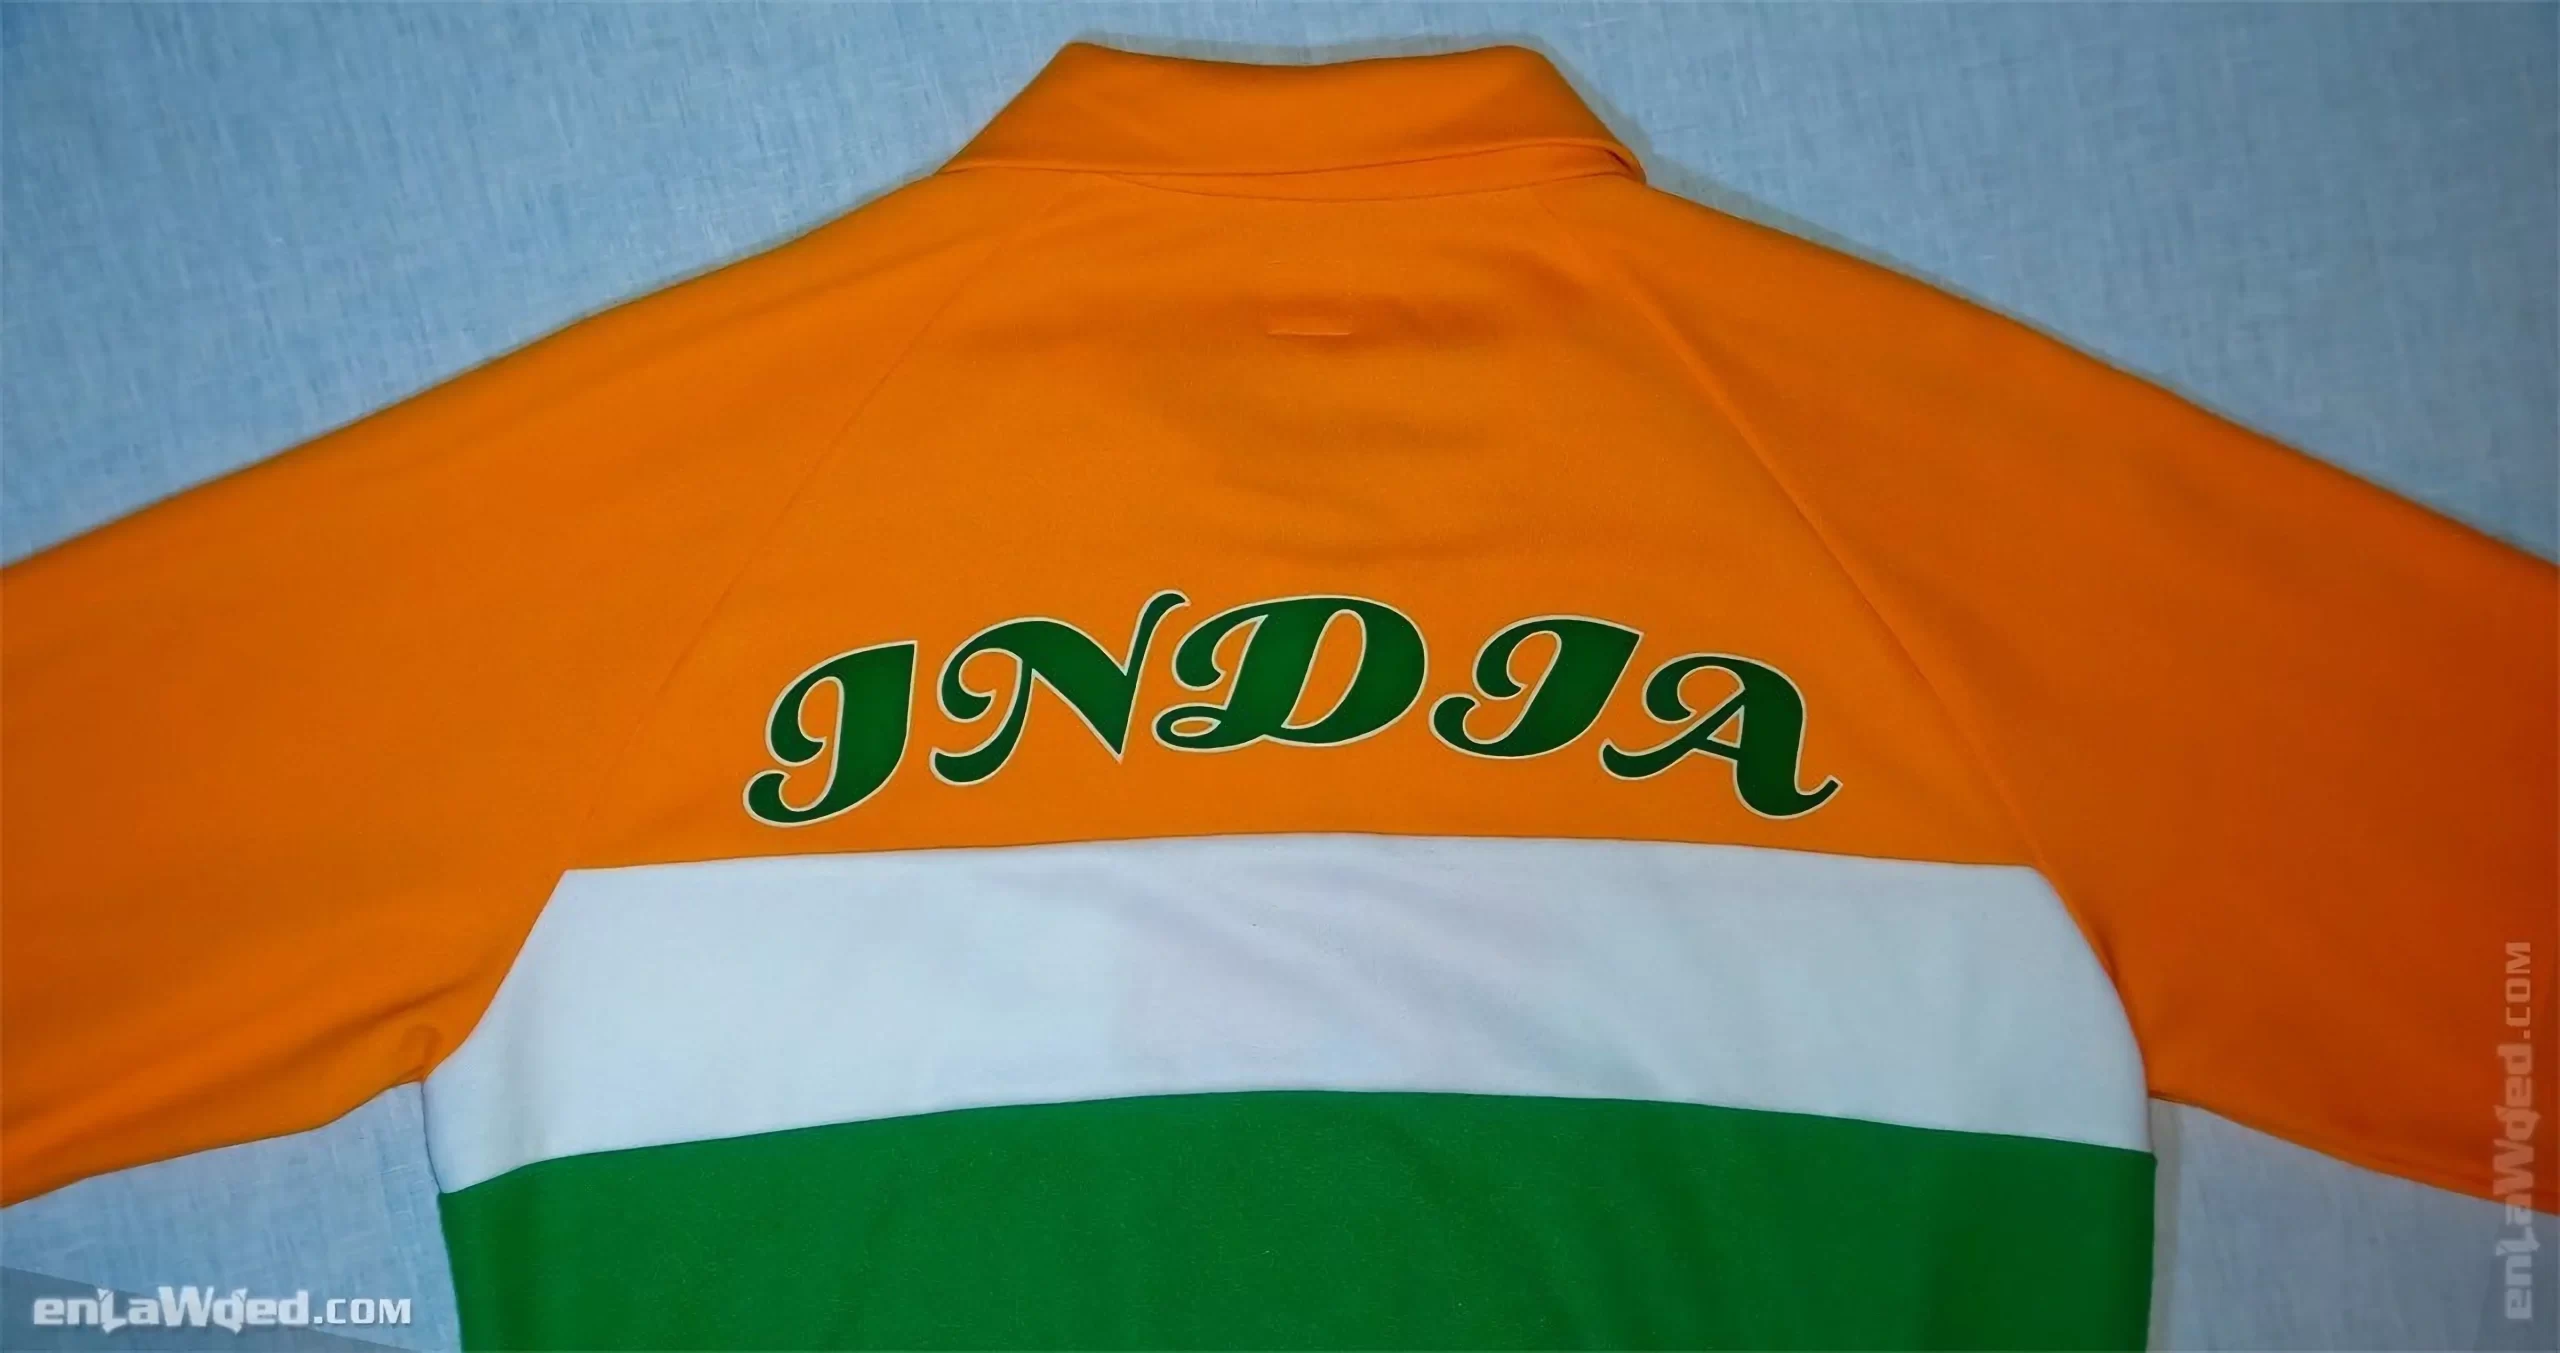 Men’s 2005 India Track Top by Adidas Originals: Jovial (EnLawded.com file #lmcfua5f0v2x8dfa3rt)